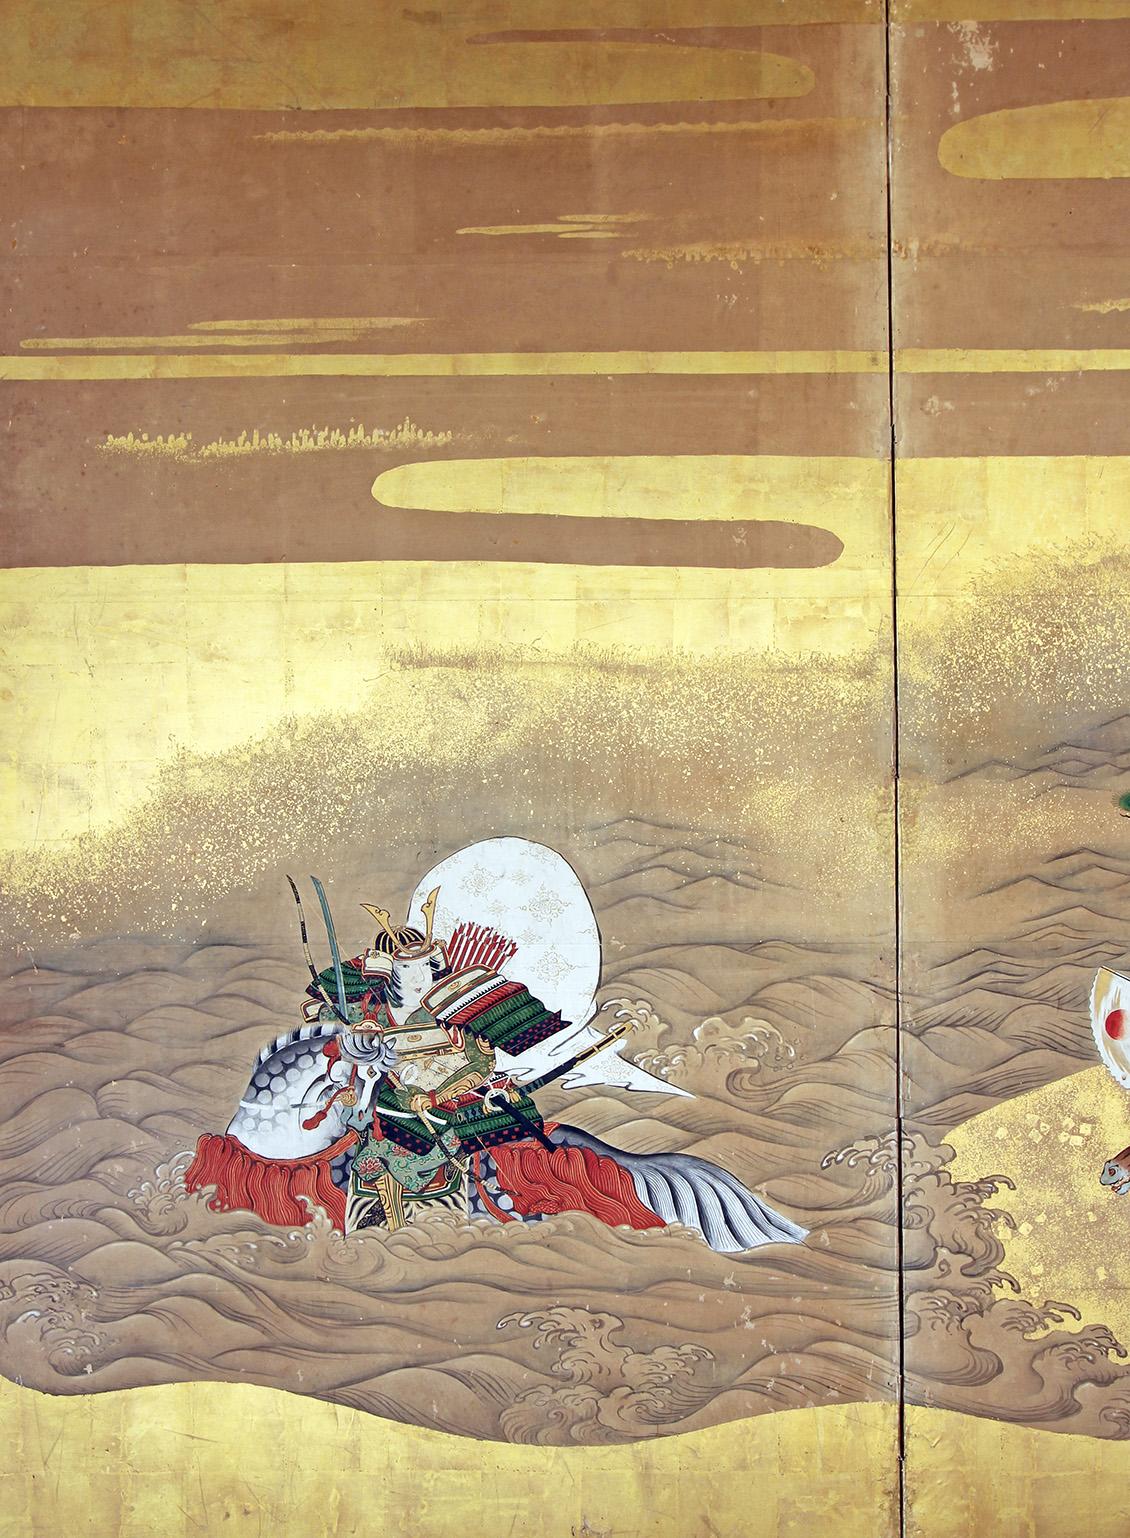 Paravento a due pannelli di scuola Tosa dipinto a pigmenti minerali su foglia d'oro e carta di riso.
Raffigura nella Guerra di Taira la Battaglia di Ichi-no-Tani tra i Clan Giapponesi Minamoto e Taira.
